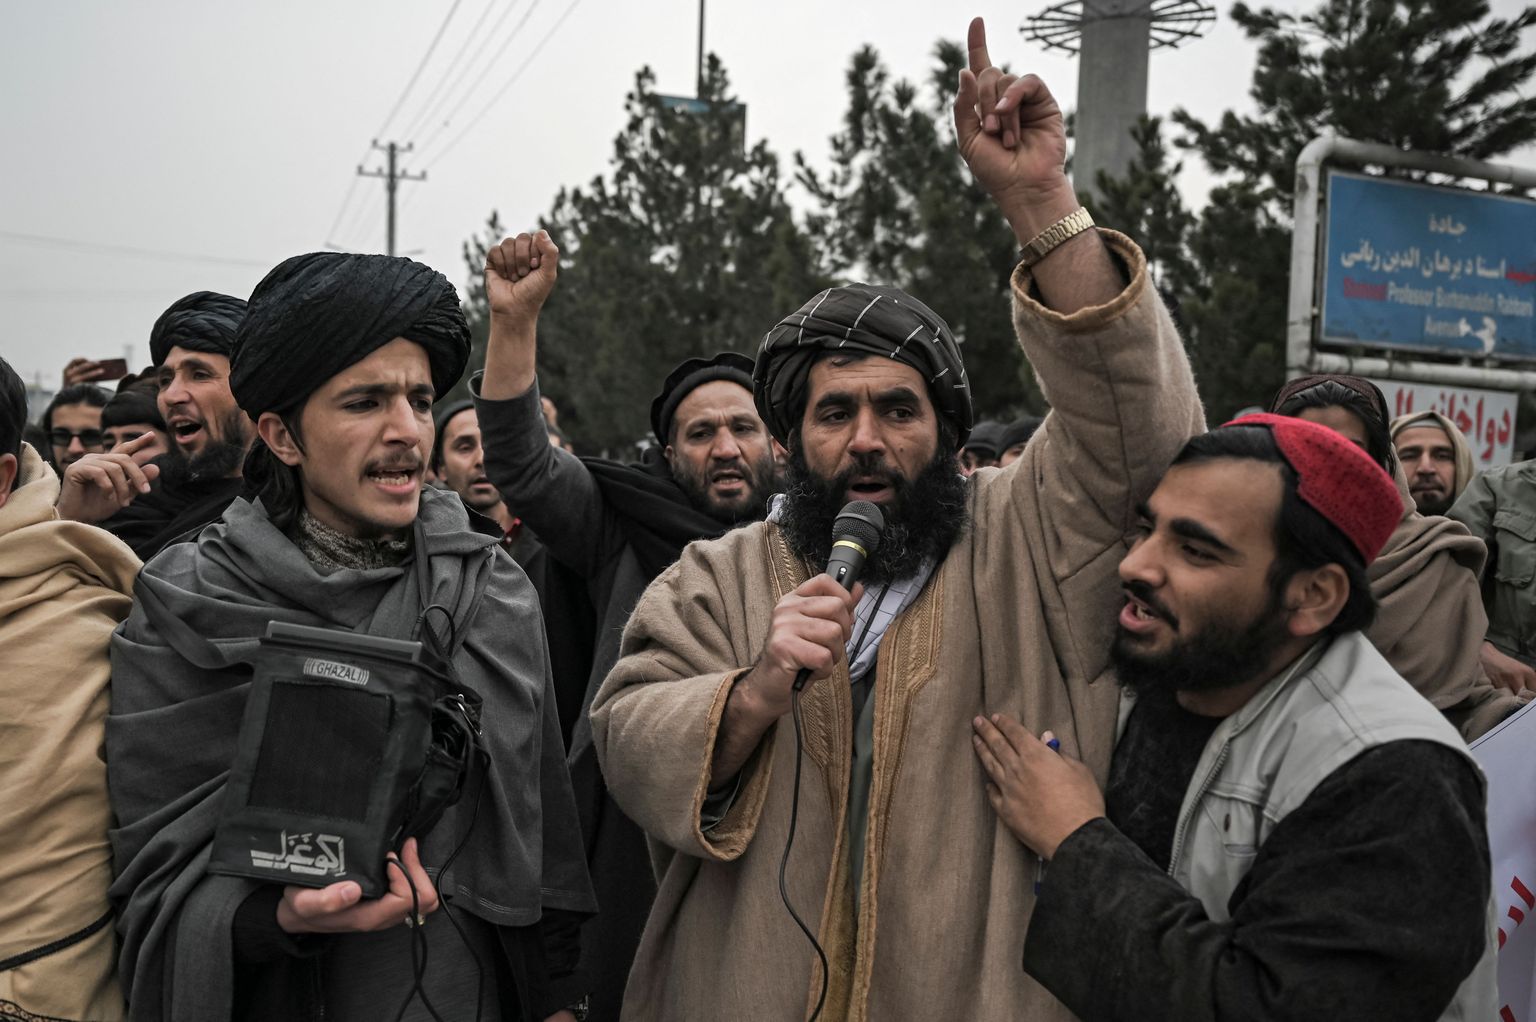 Talibani liige hõikumas demonstratsioonil, kus mõisteti hukka hiljutist Afganistani naisõiguslaste meeleavaldust. 21. jaanuar 2022.